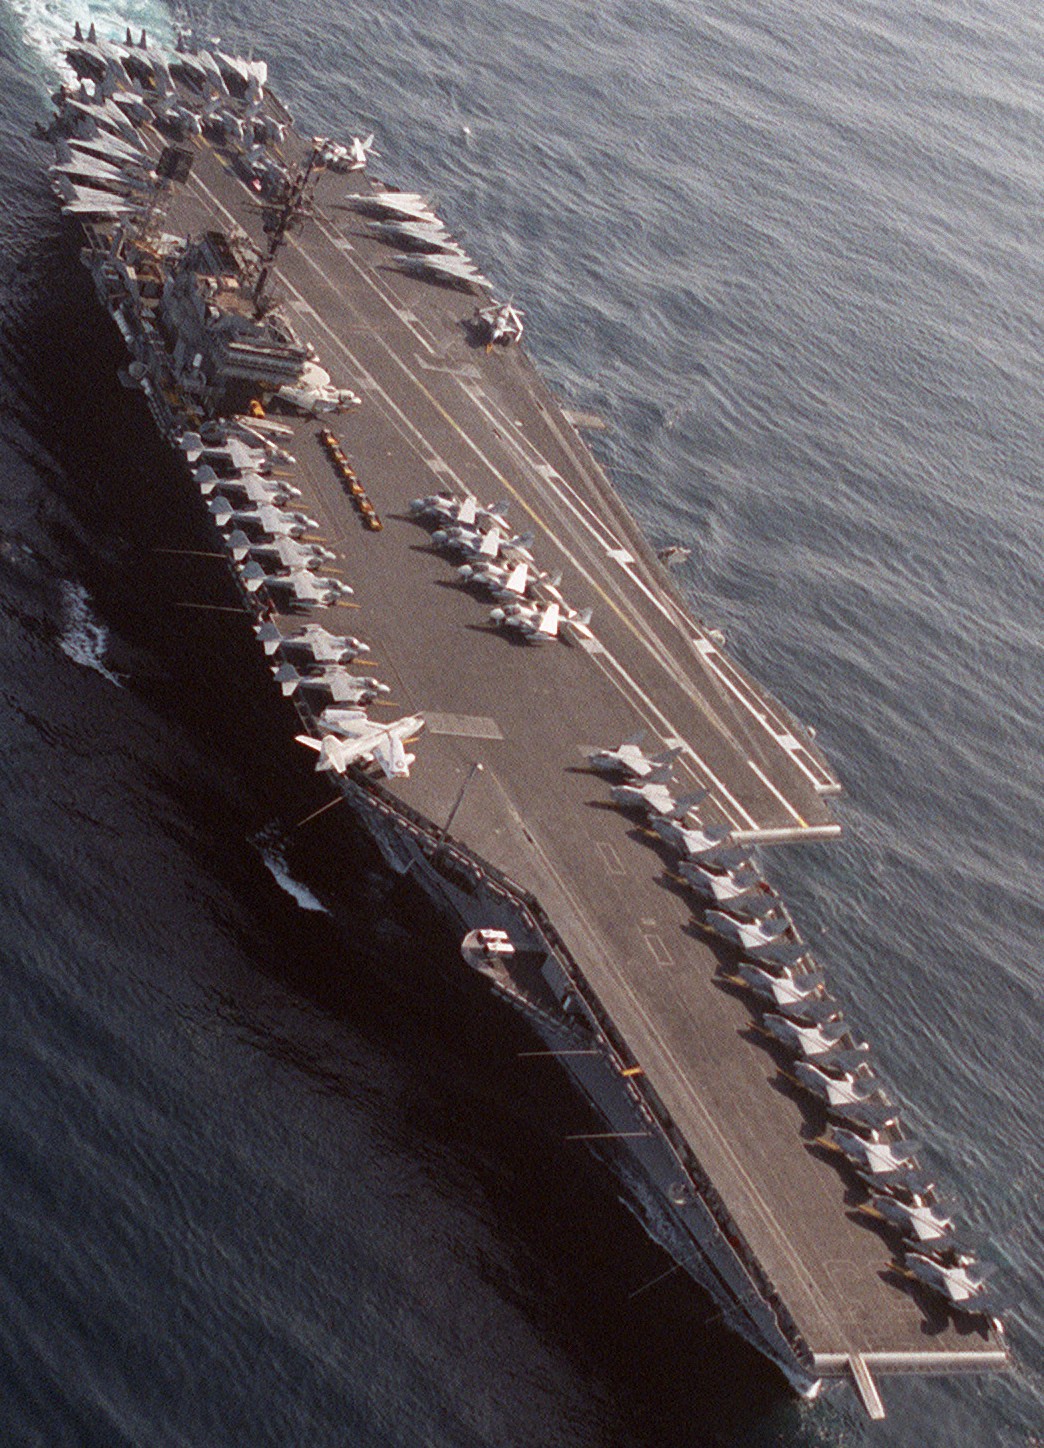 cv-63 uss kitty hawk aircraft carrier air wing cvw-9 us navy 420